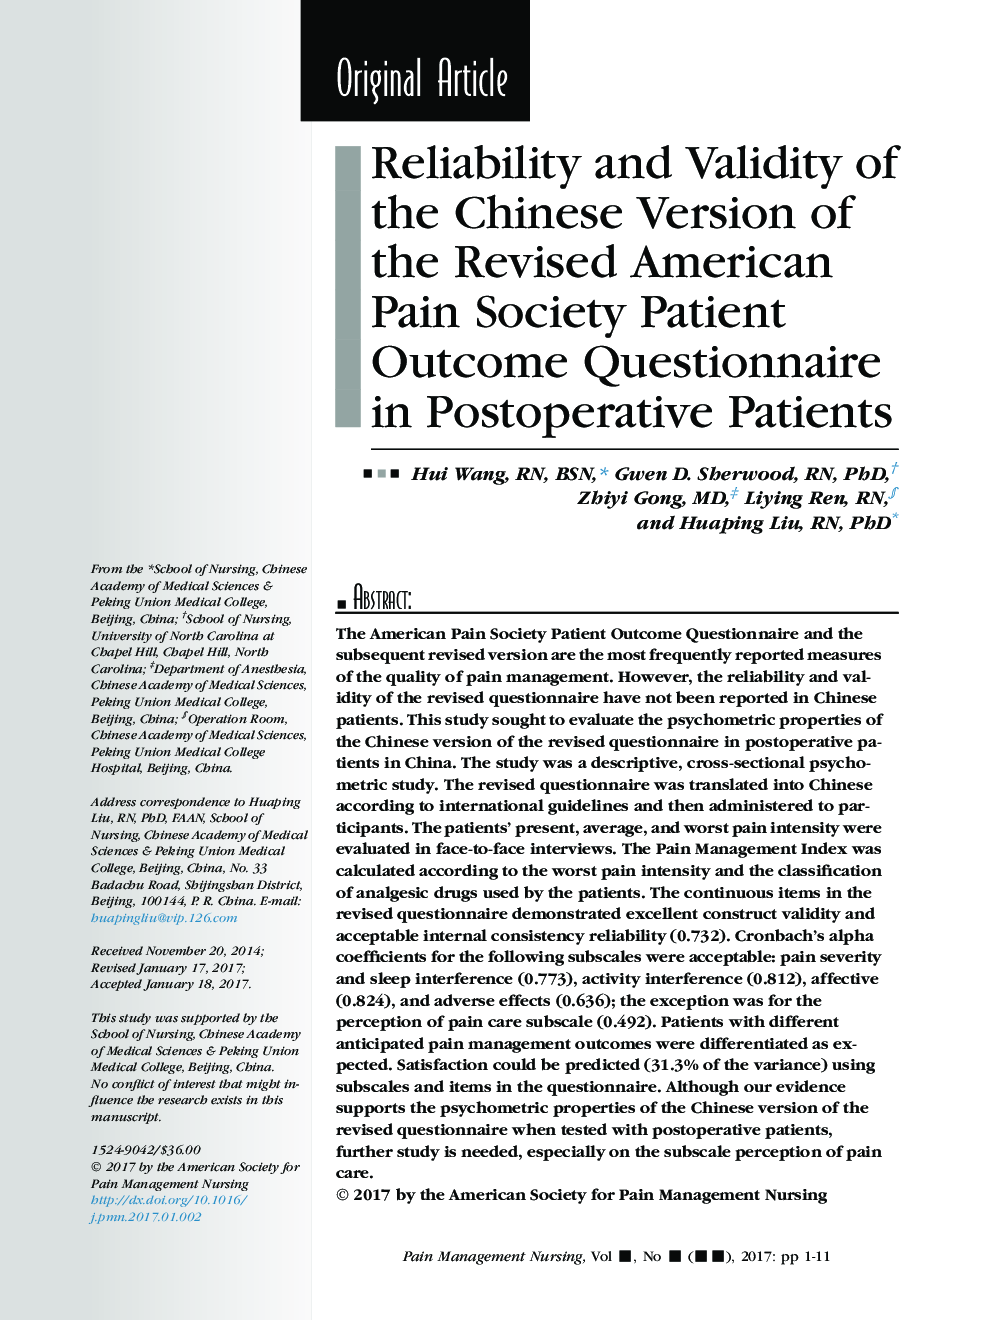 قابلیت اطمینان و اعتبار نسخه چینی جامعه مجدد آمریکا در مورد درد بیماران در بیماران پس از عمل 